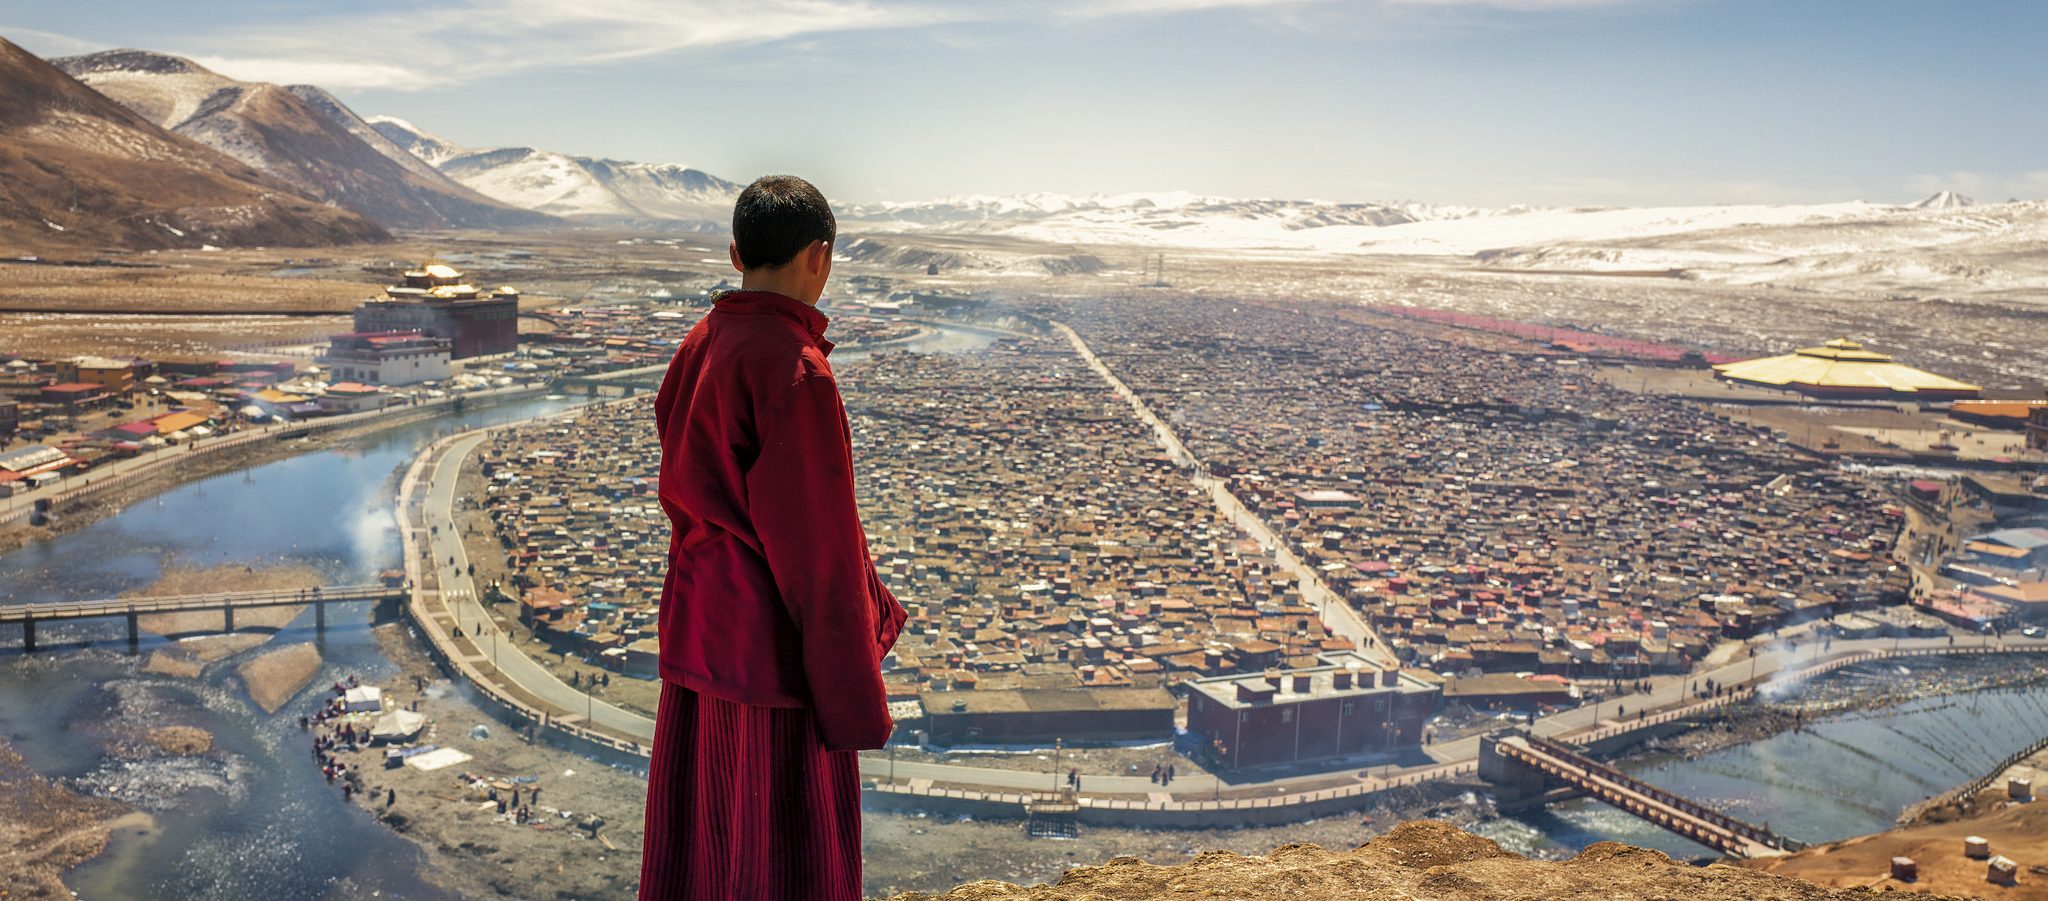 Quel avenir pour le Tibet après 70 ans de domination chinoise et alors que le Dalaï-lama est au soir de sa vie ? (Source : Mironline)